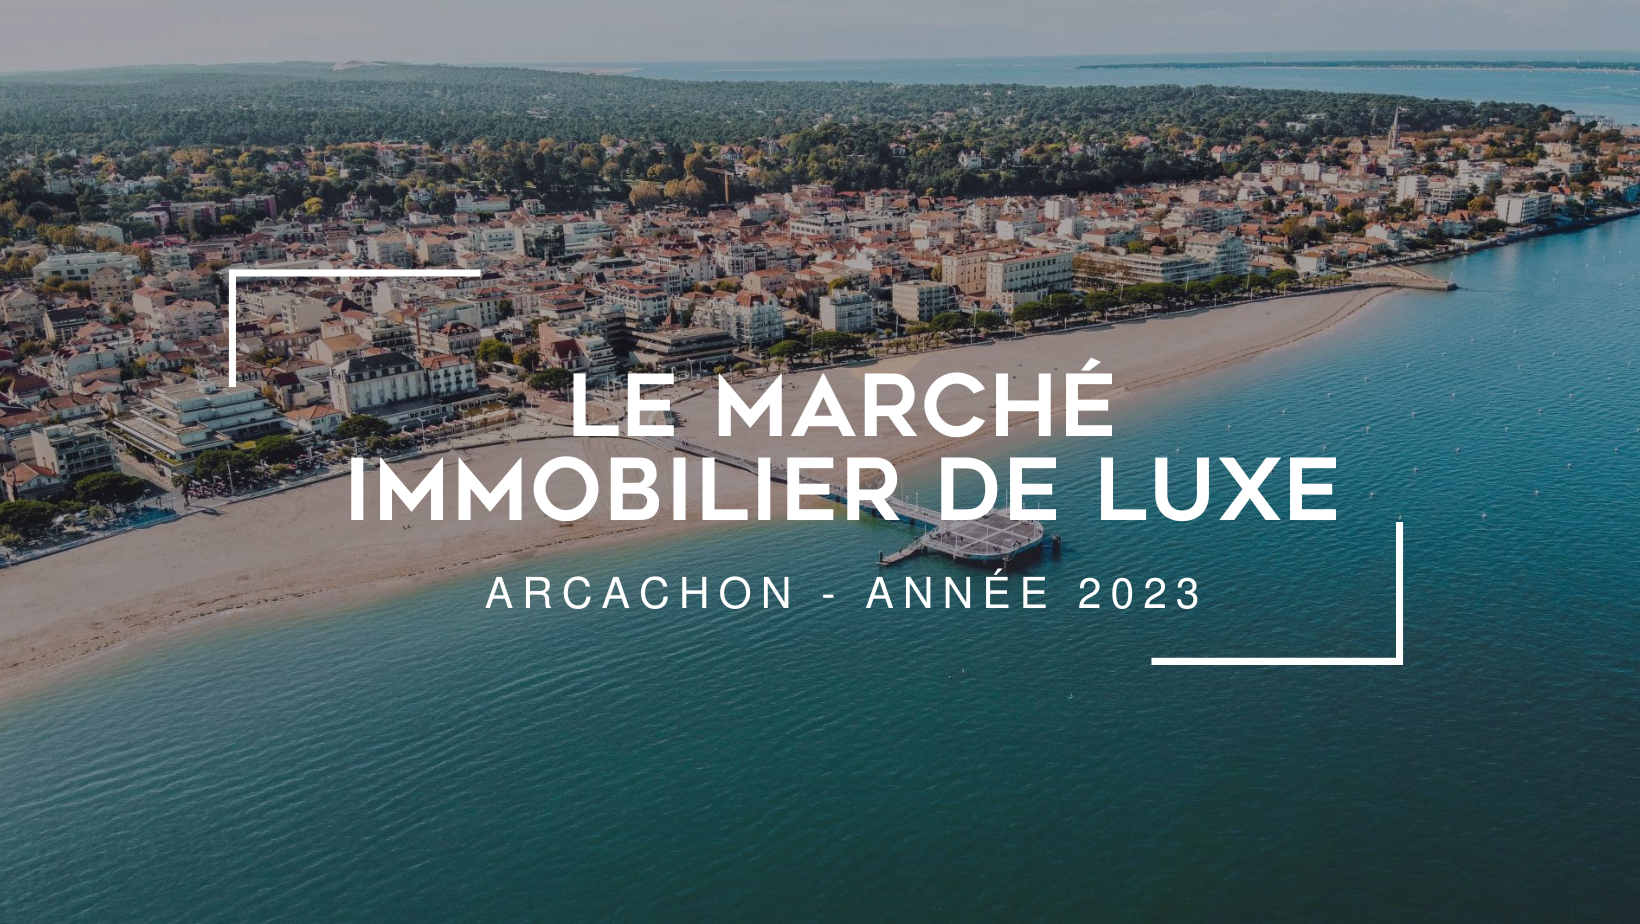 Le marché de l'immobilier de luxe à Arcachon en 2023